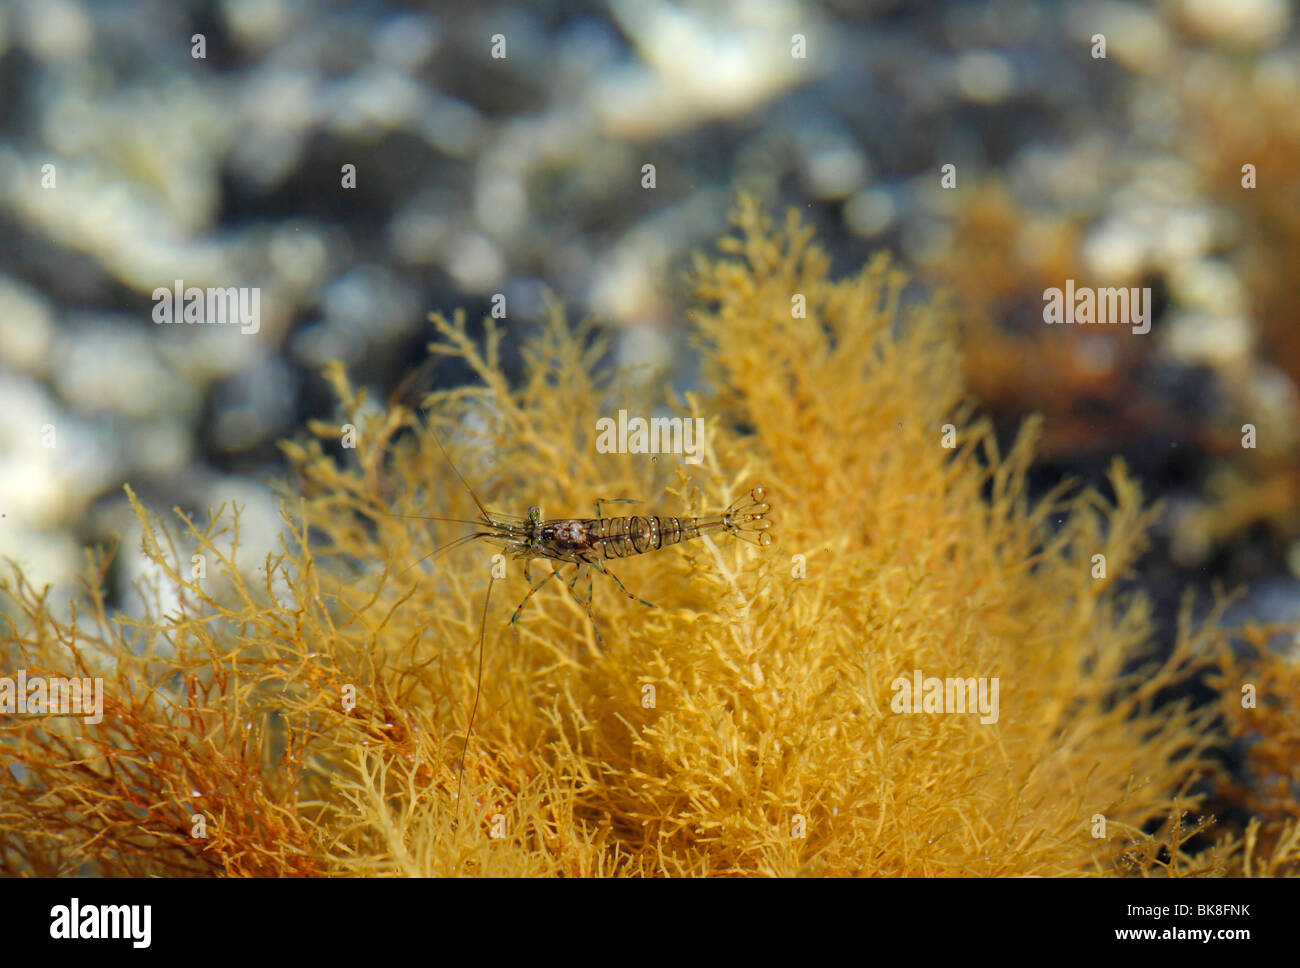 Shrimp, La Palma, Canary Islands, Spain Stock Photo